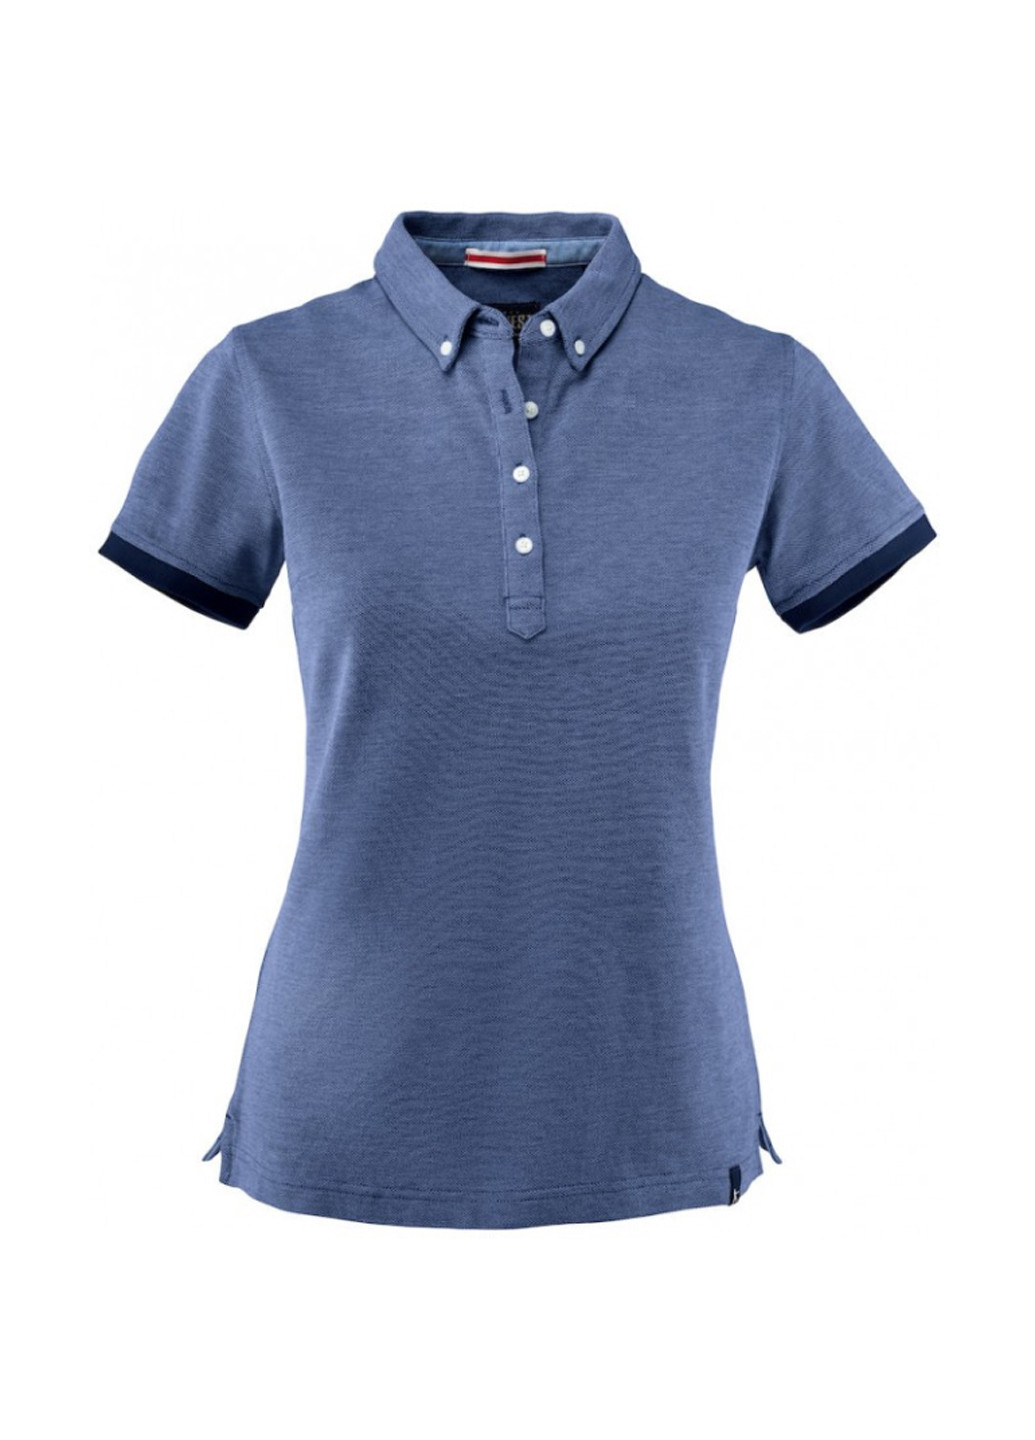 Серо-синяя женская футболка-поло James Harvest меланжевая